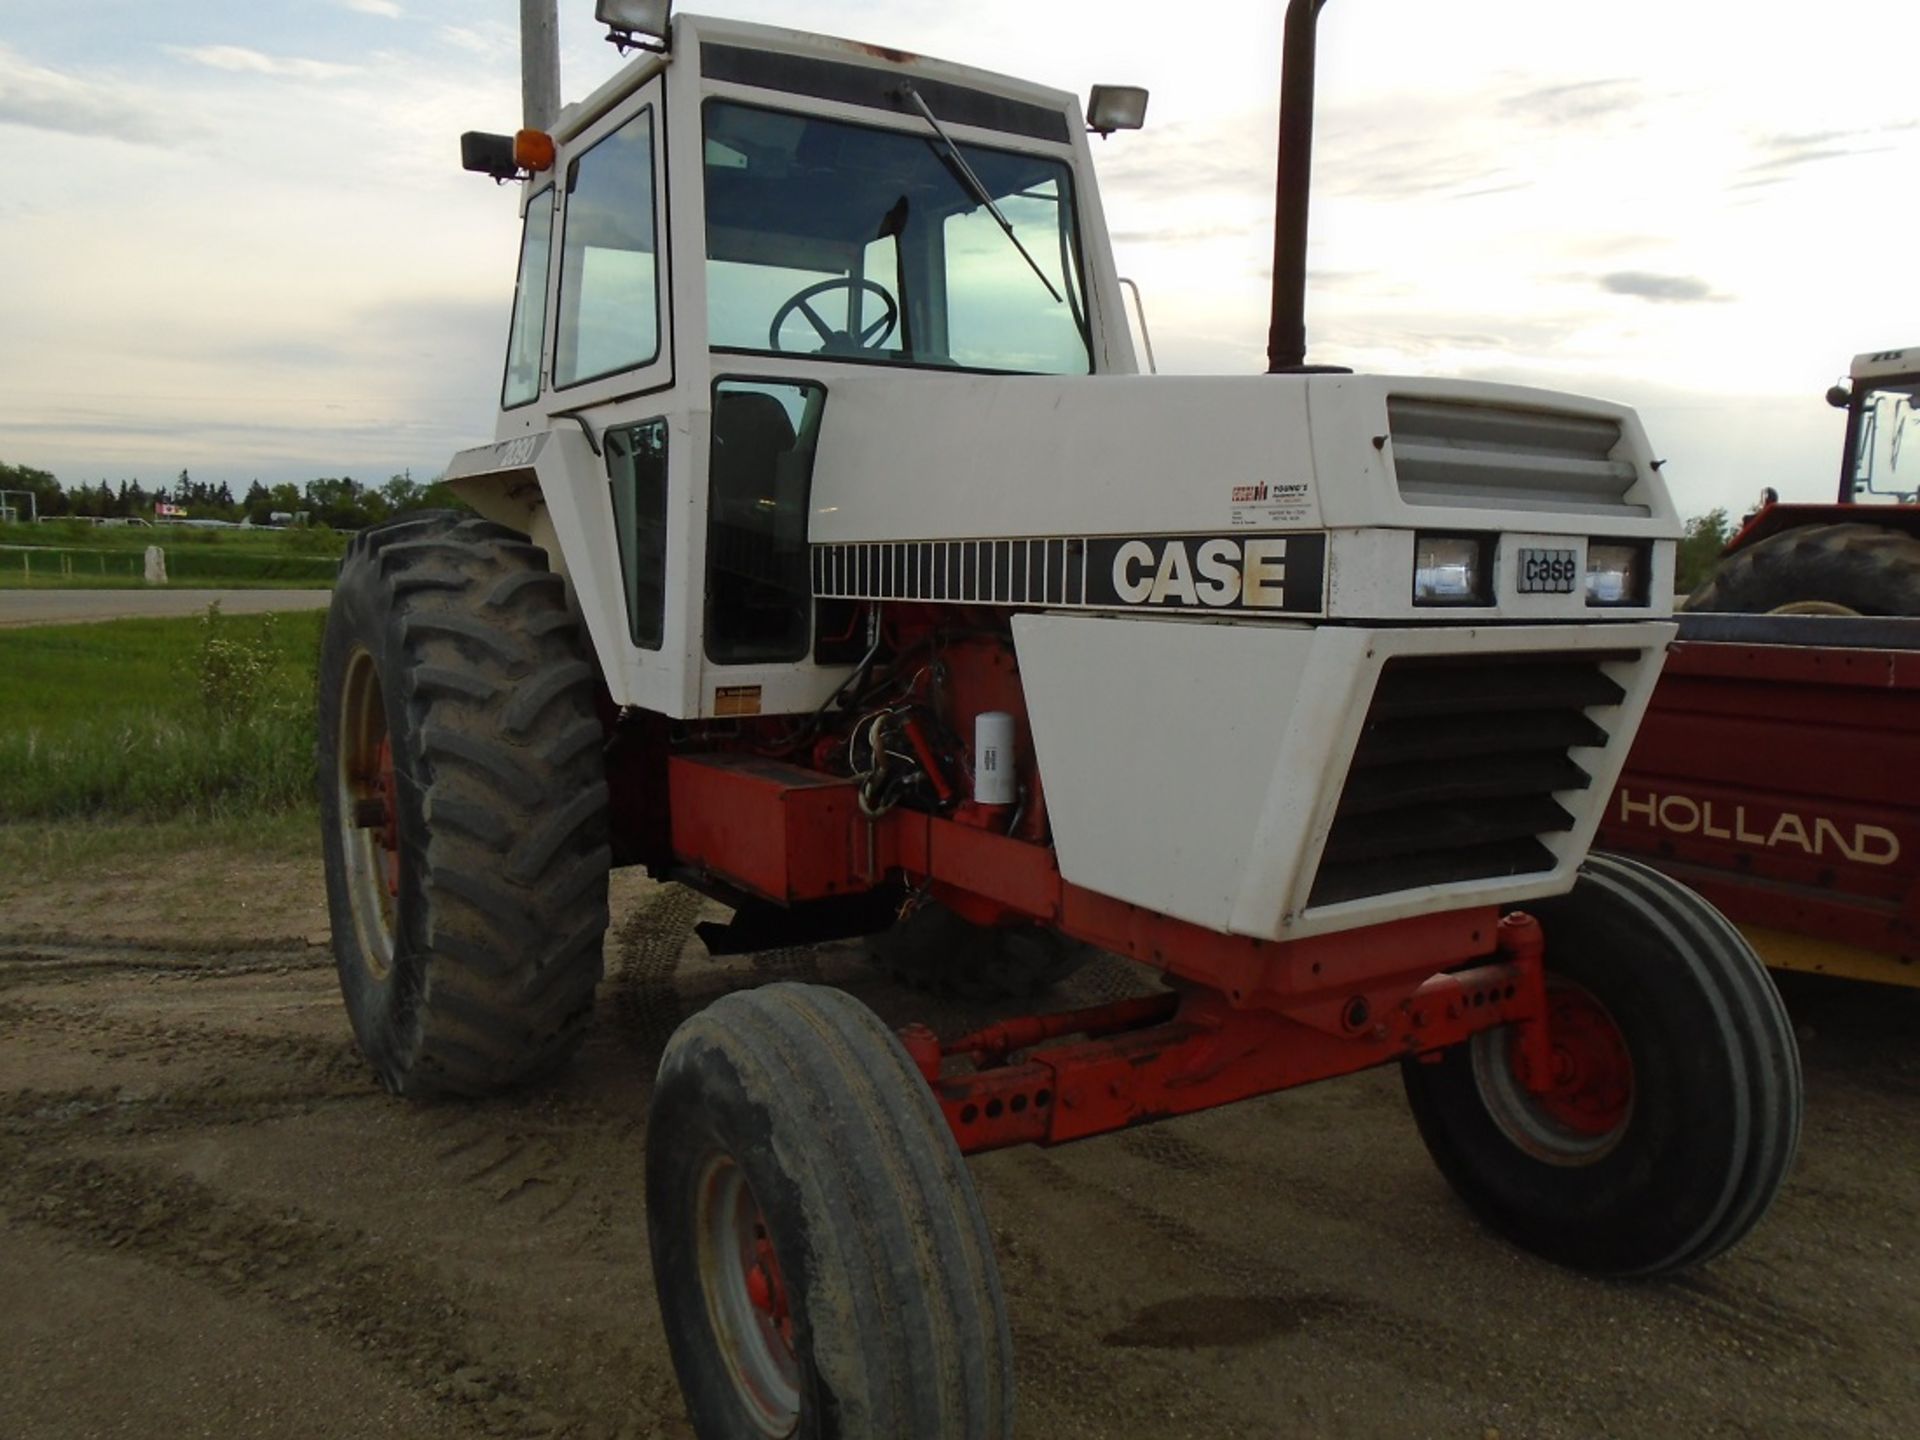 Case 2090 Diesel Tractor, s/n: 10175401